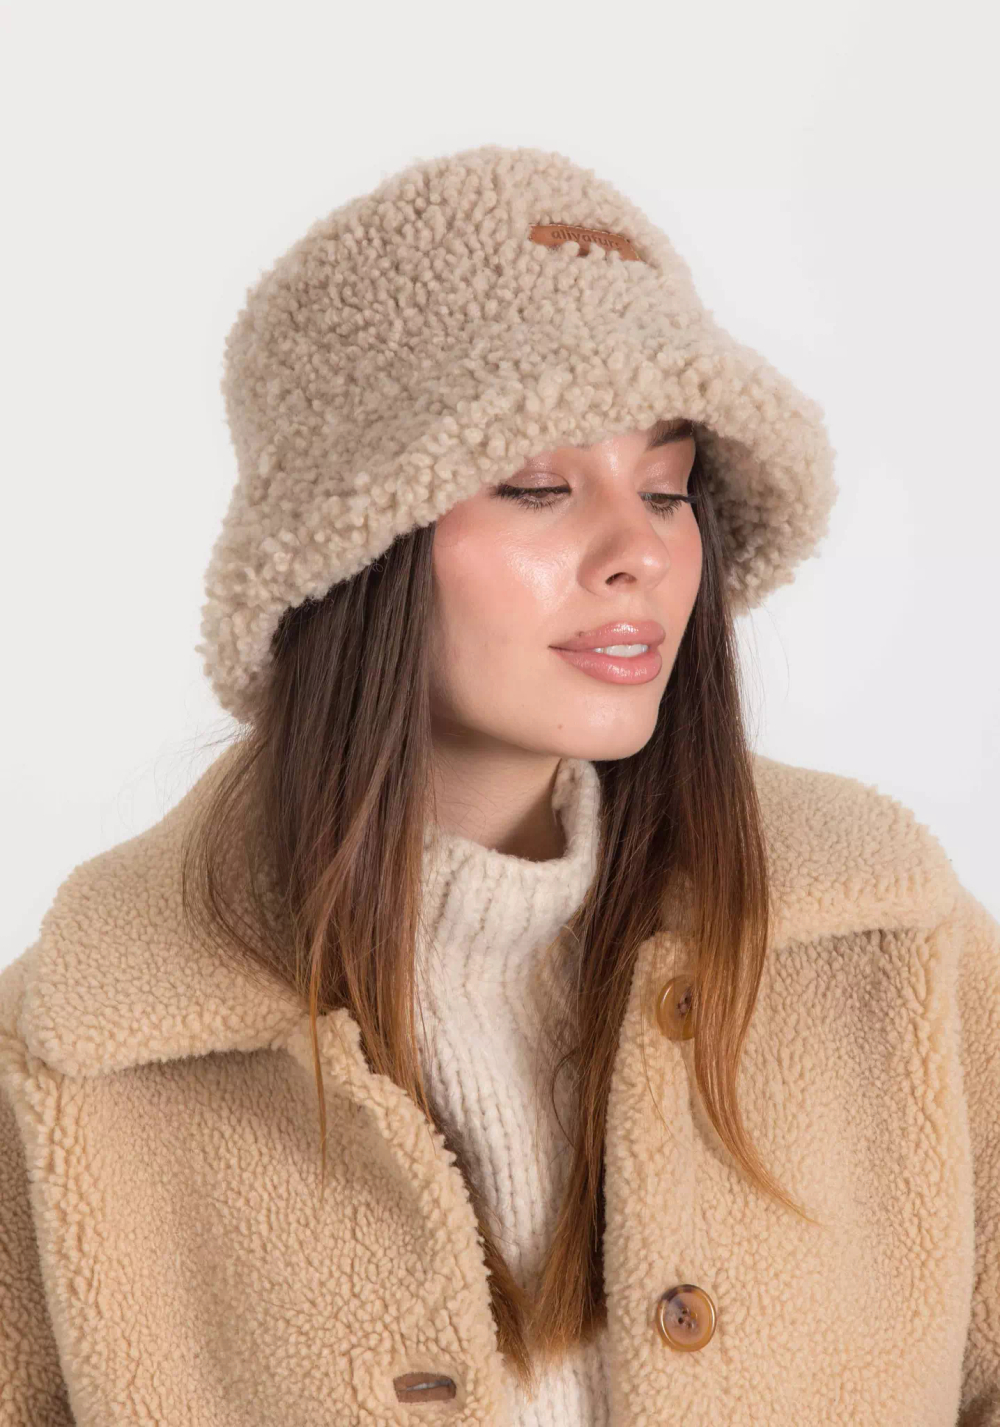 Купить шапку женскую из овчины в интернет-магазине | вороковский.рф